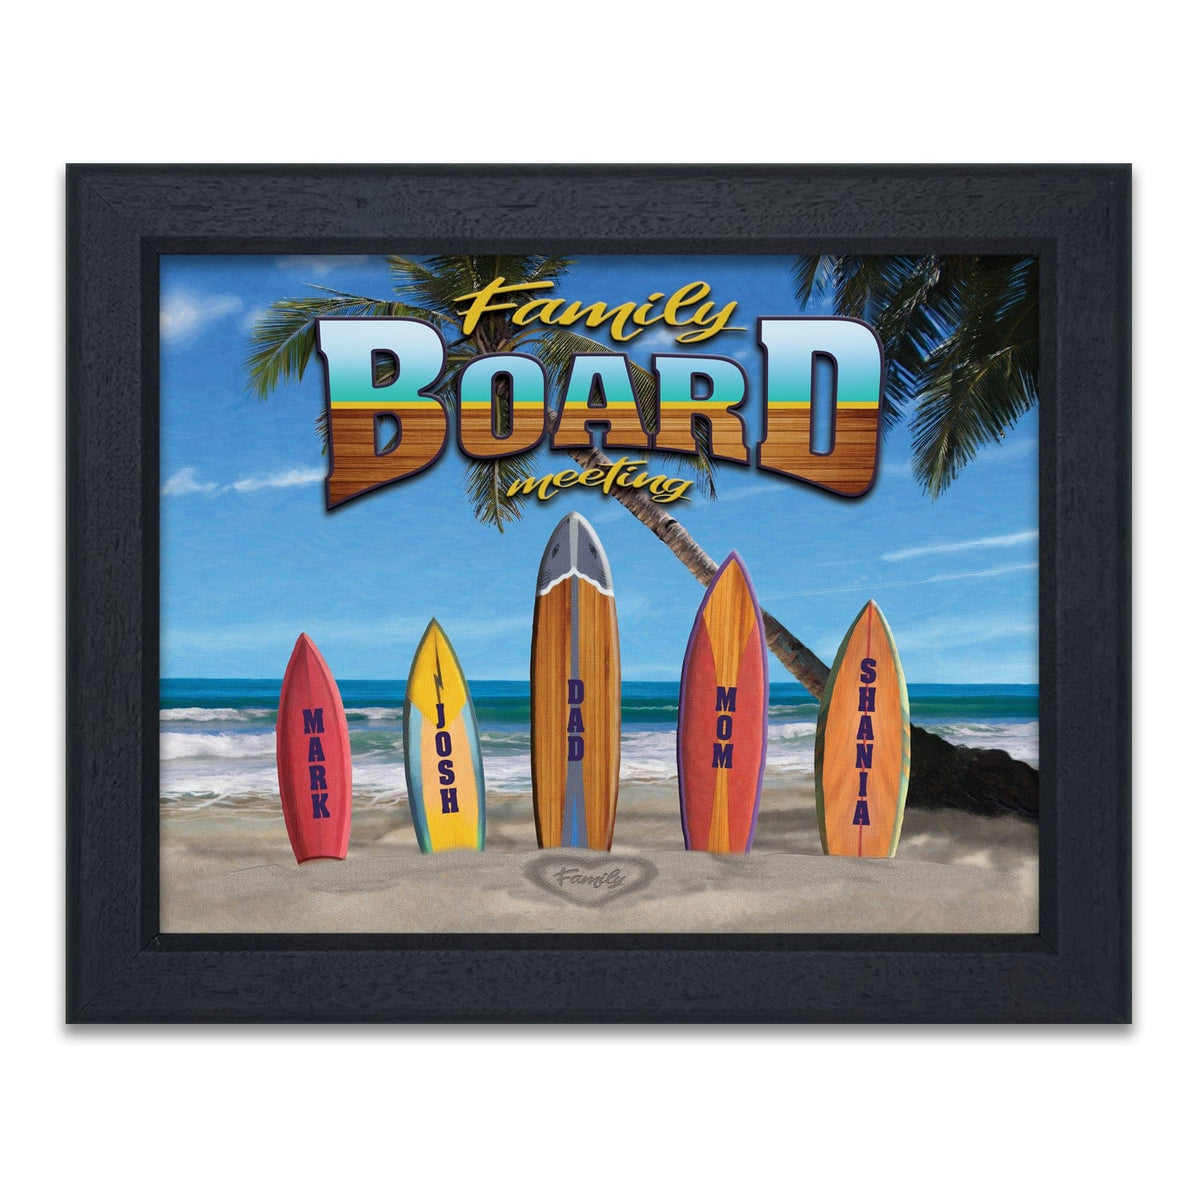 Surfing Family art framed under glass